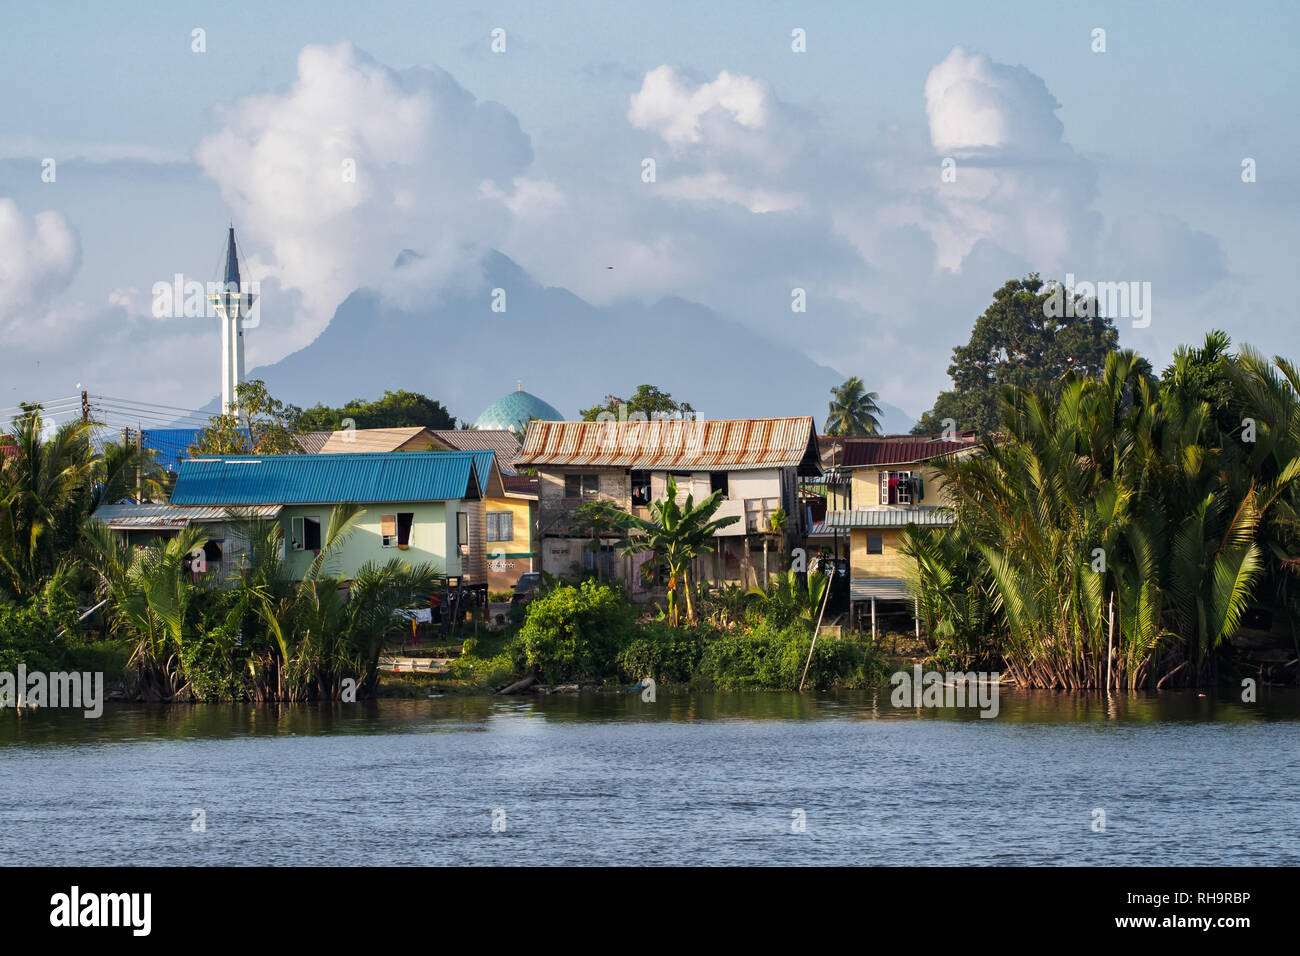 Paesaggio in Kuching presso la banca di fiume Sarawak Borneo, Malaysia Foto Stock